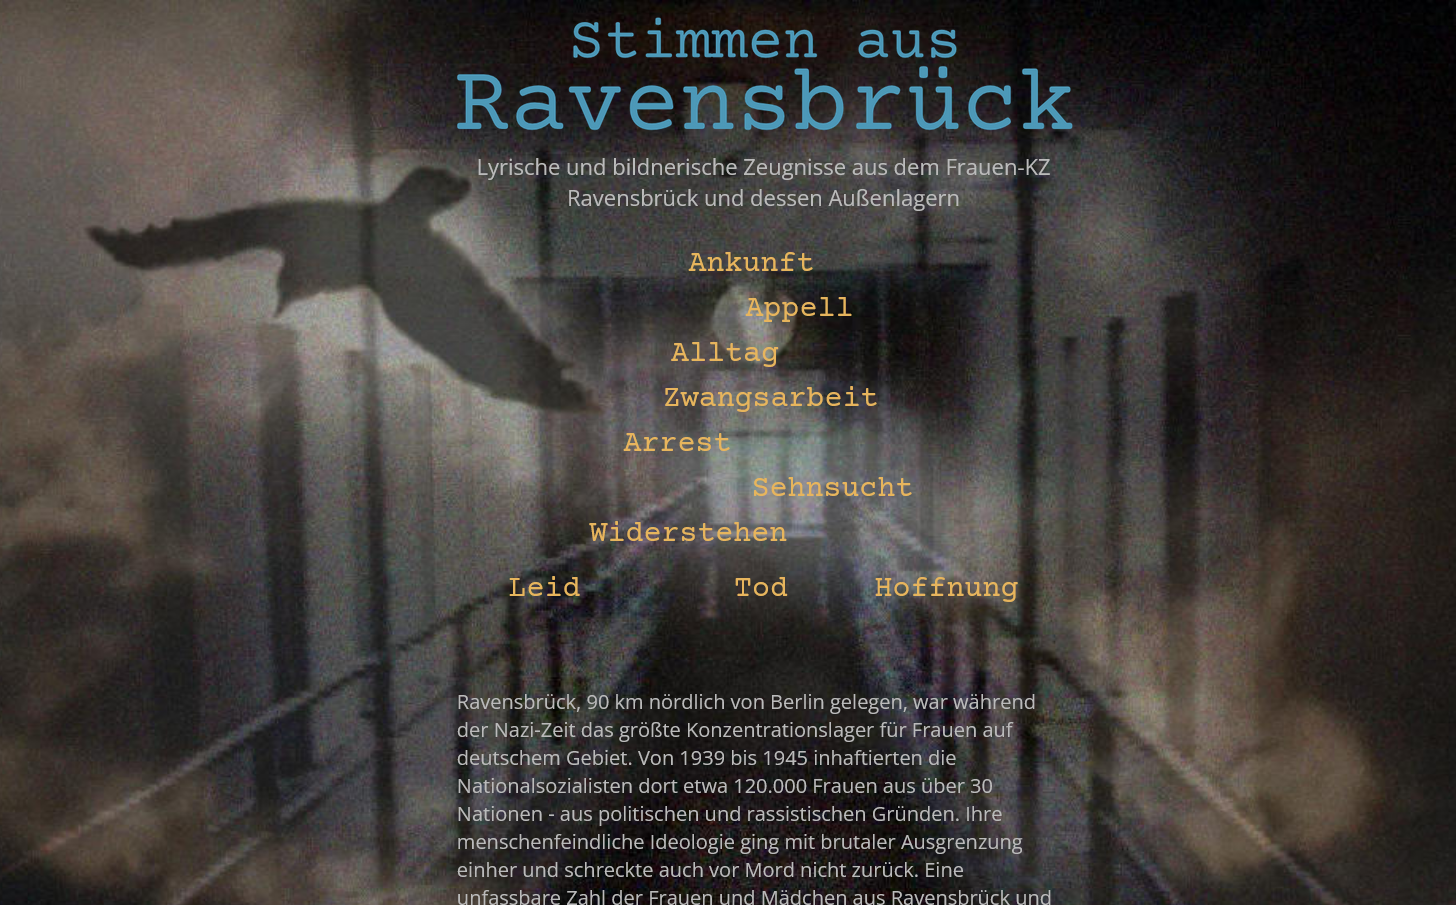 Startseite Stimmen aus Ravensbrück